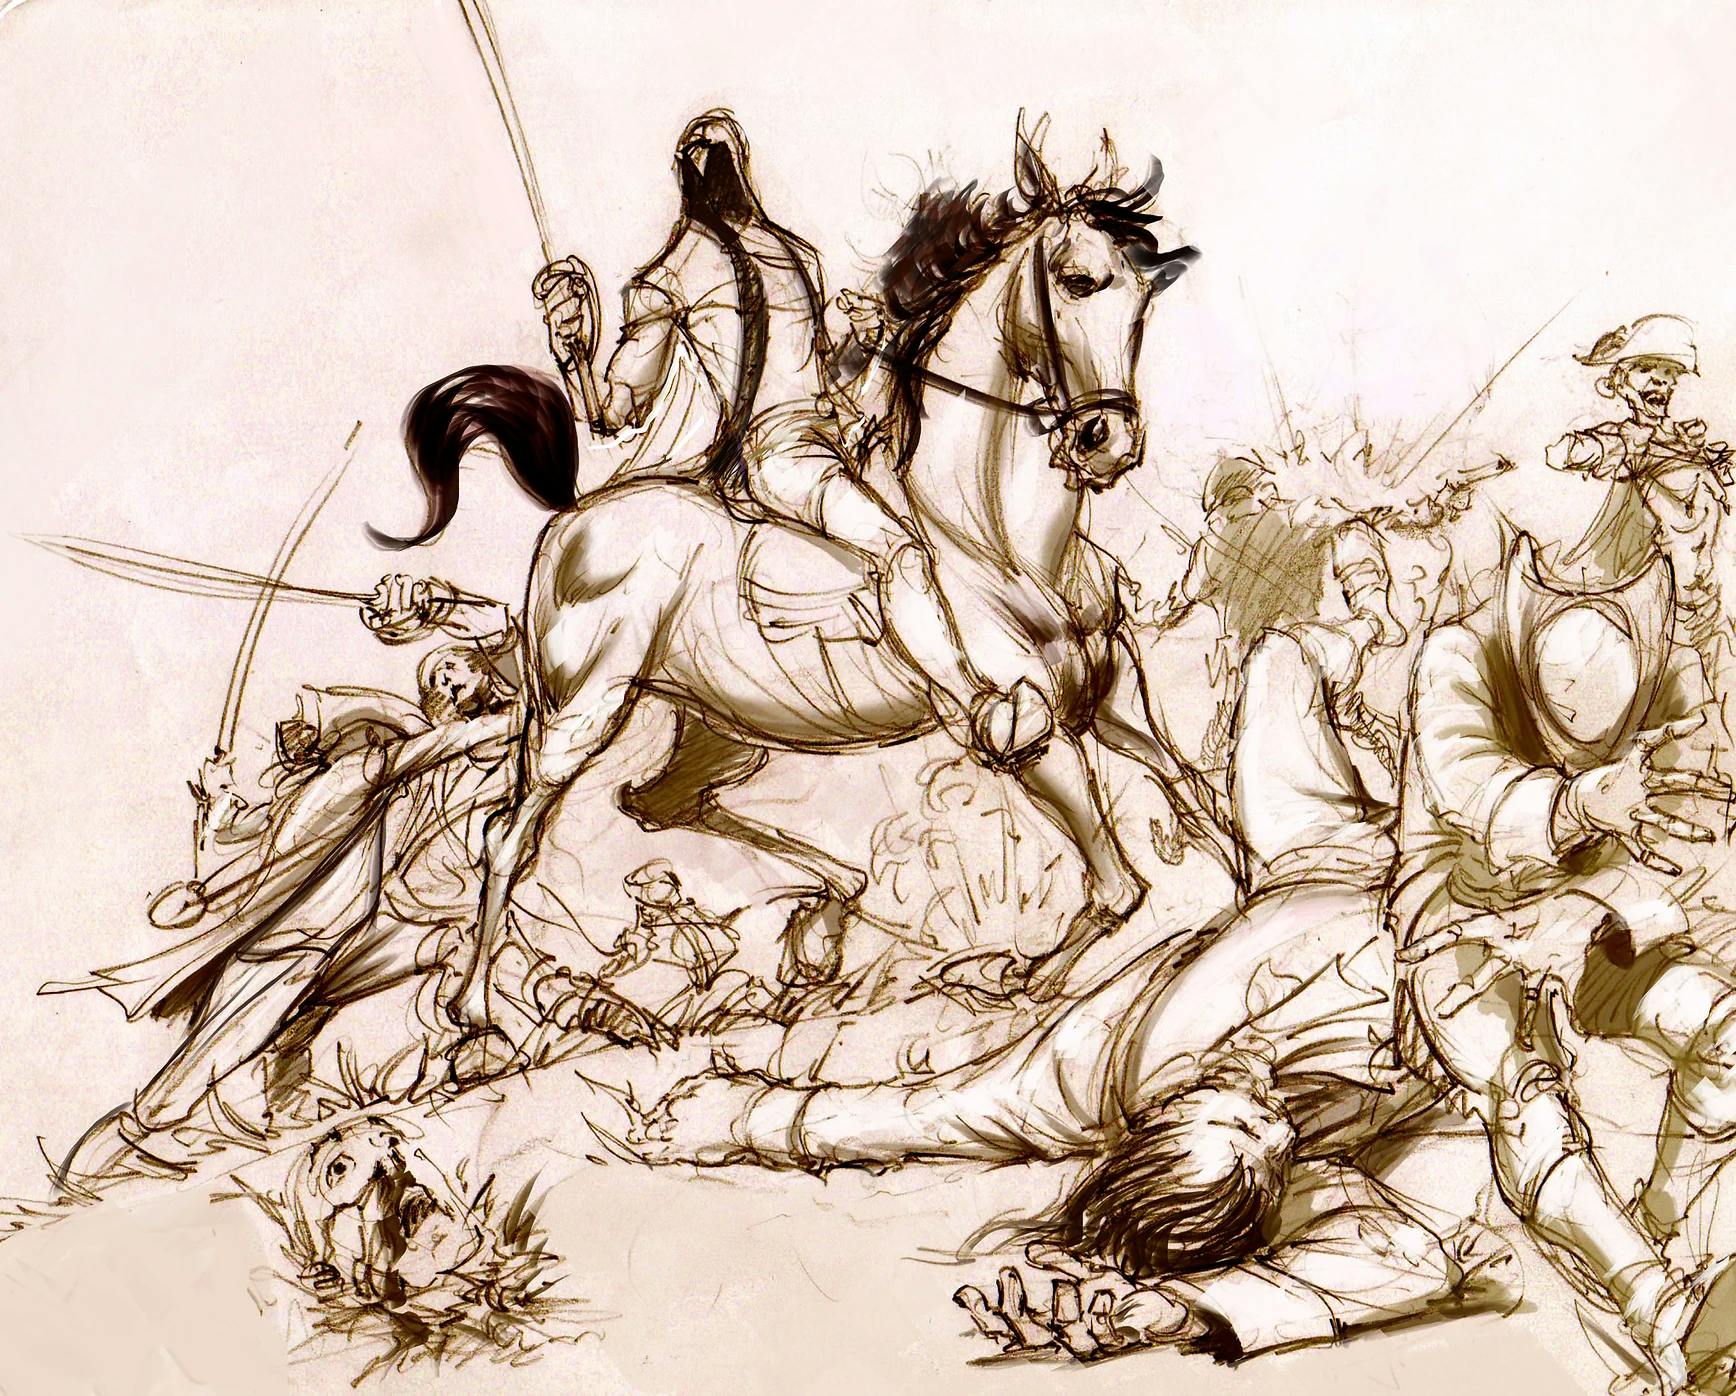 Sketch of a man on horseback